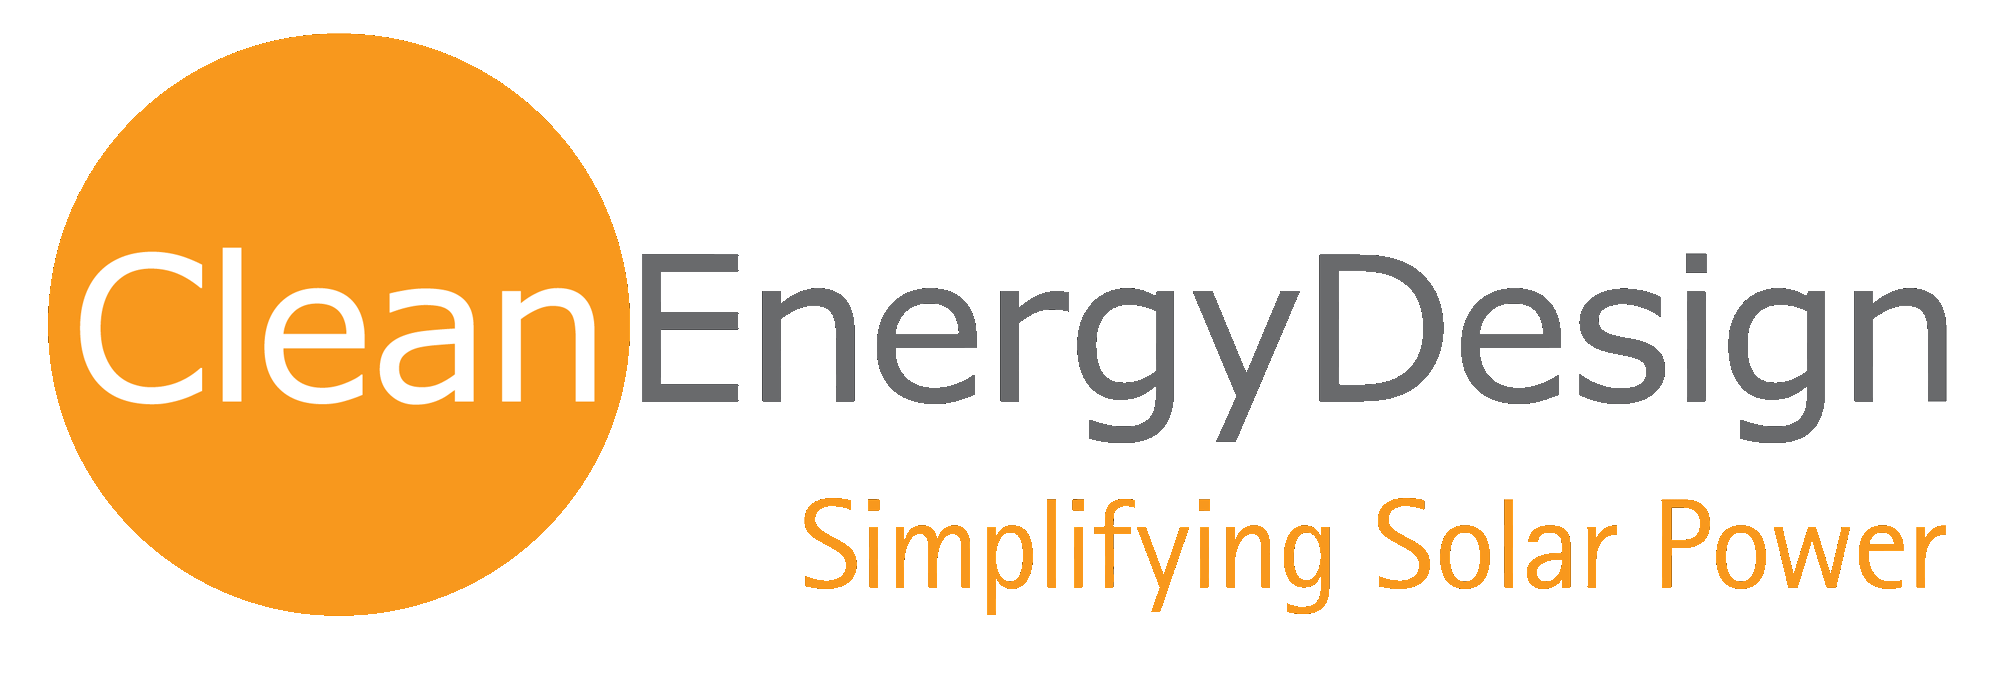 Clean Energy Design LLC logo